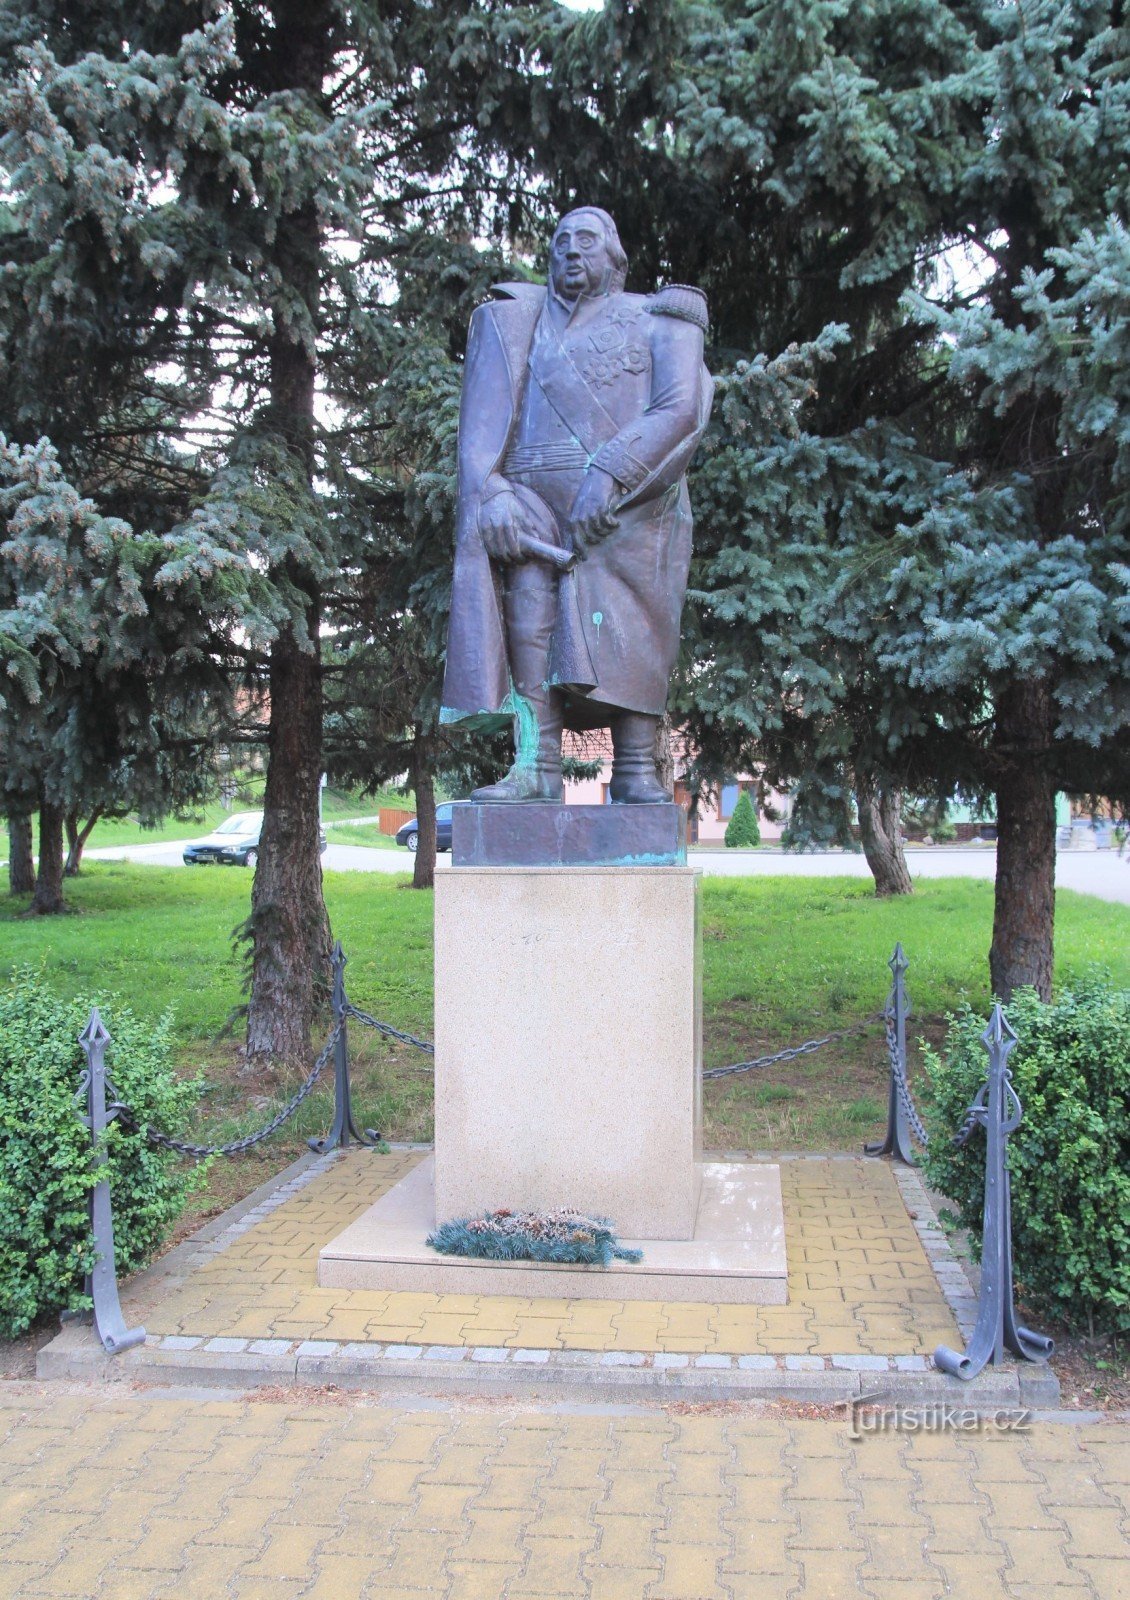 Місце поклоніння в парку зі статуєю полководця